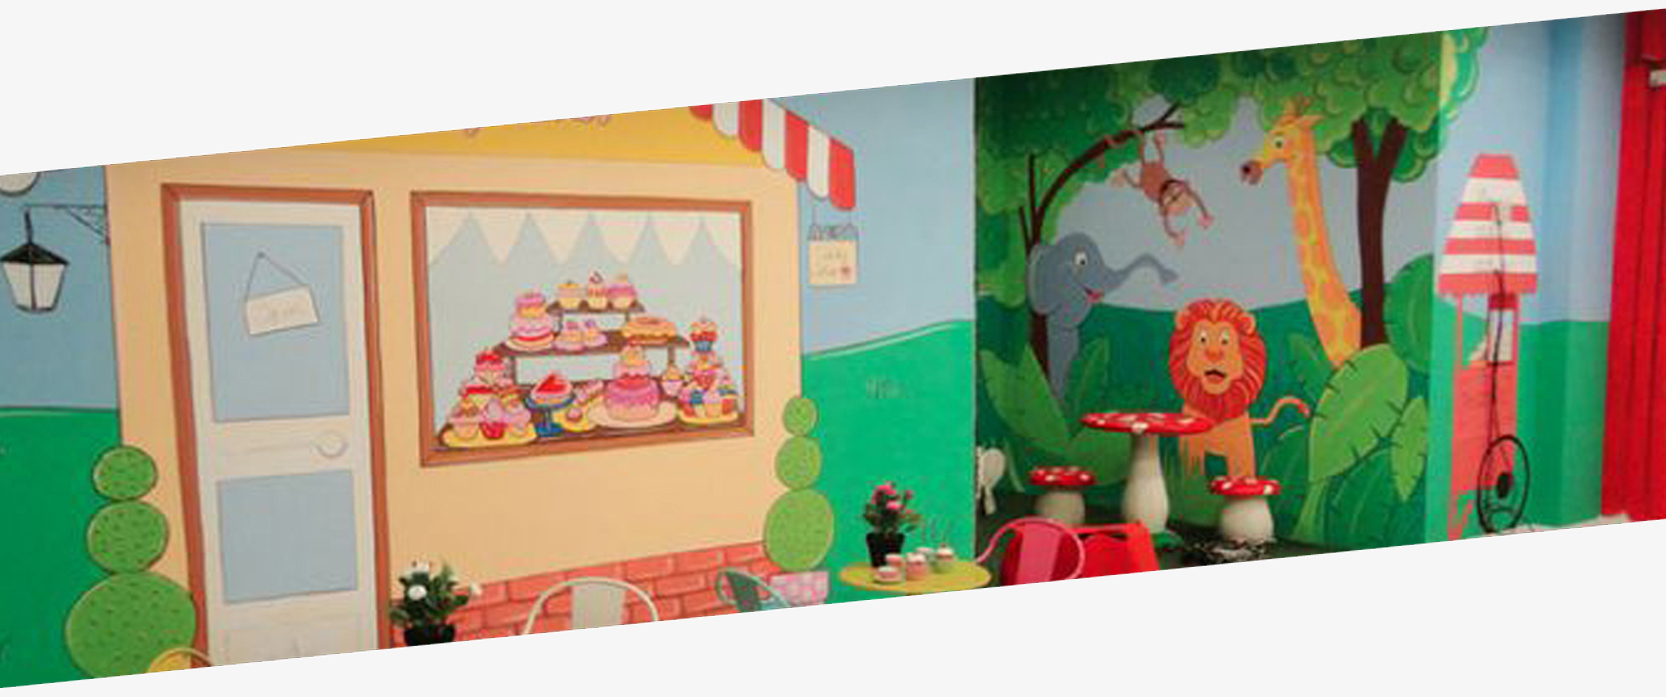 murales infantiles pintados en paredes 